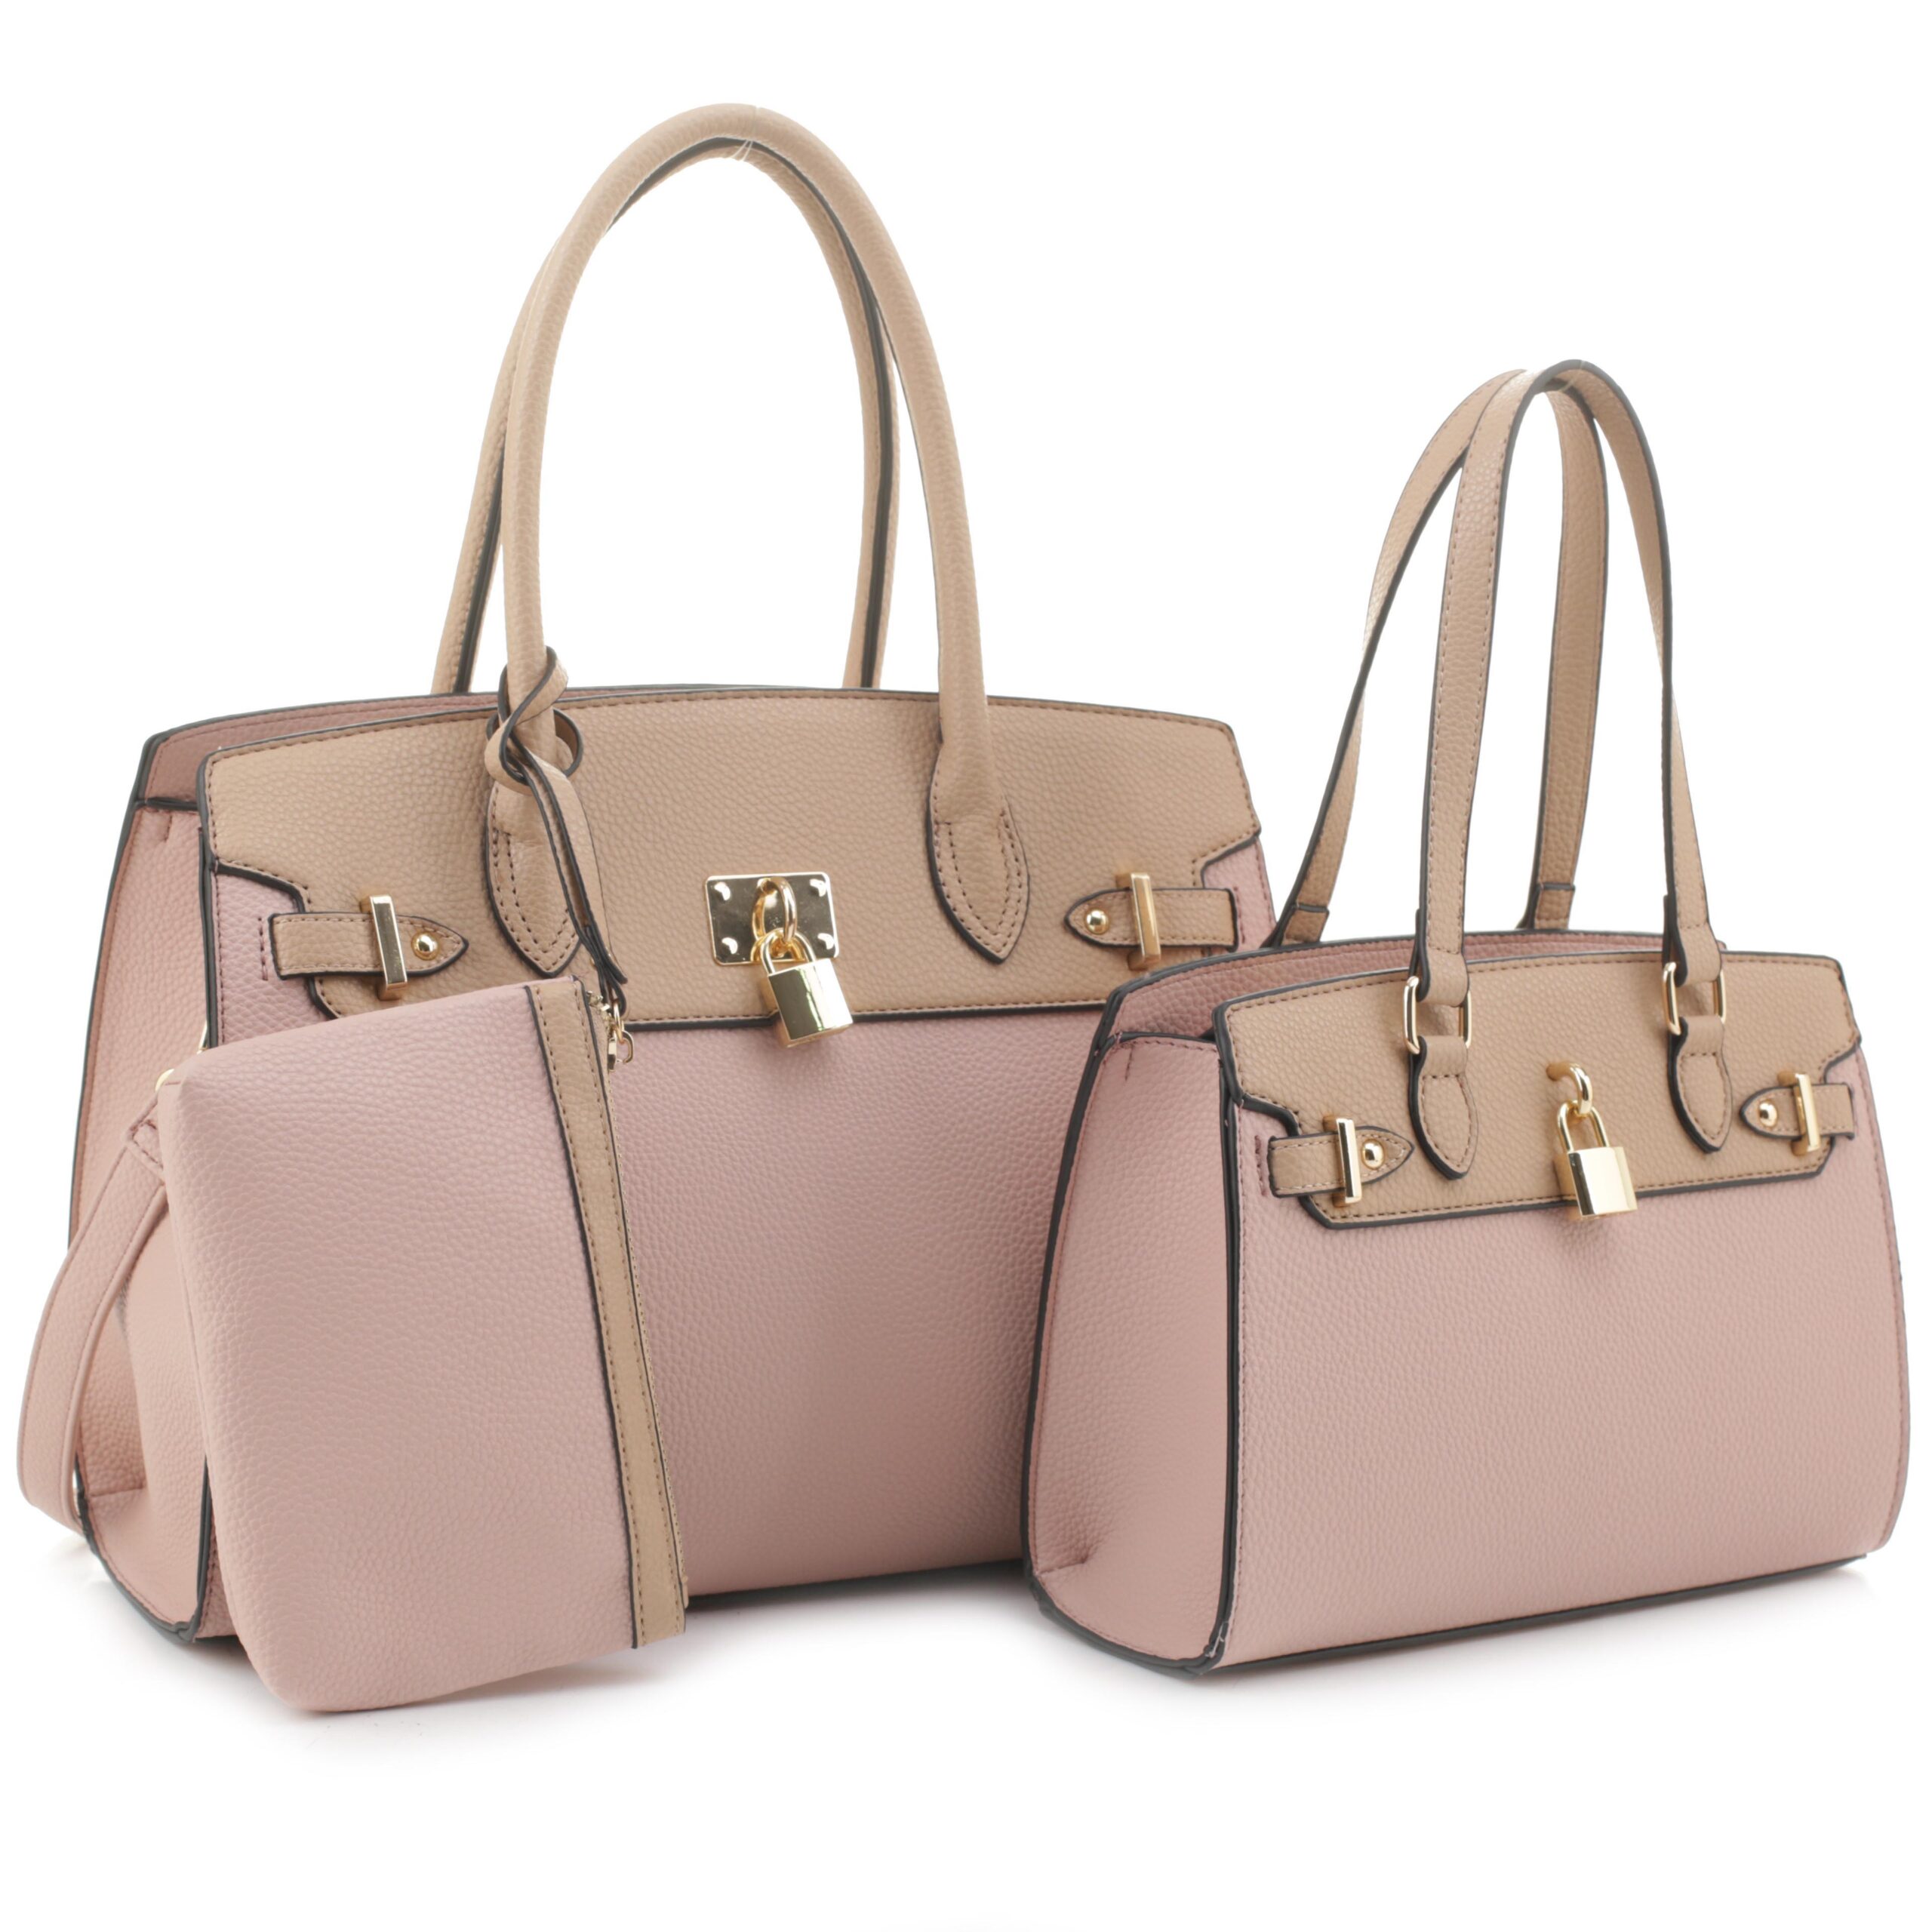 BL-FL21055-T3 taupe pink 3in1 Plain Key Lock Design Satchel Bag